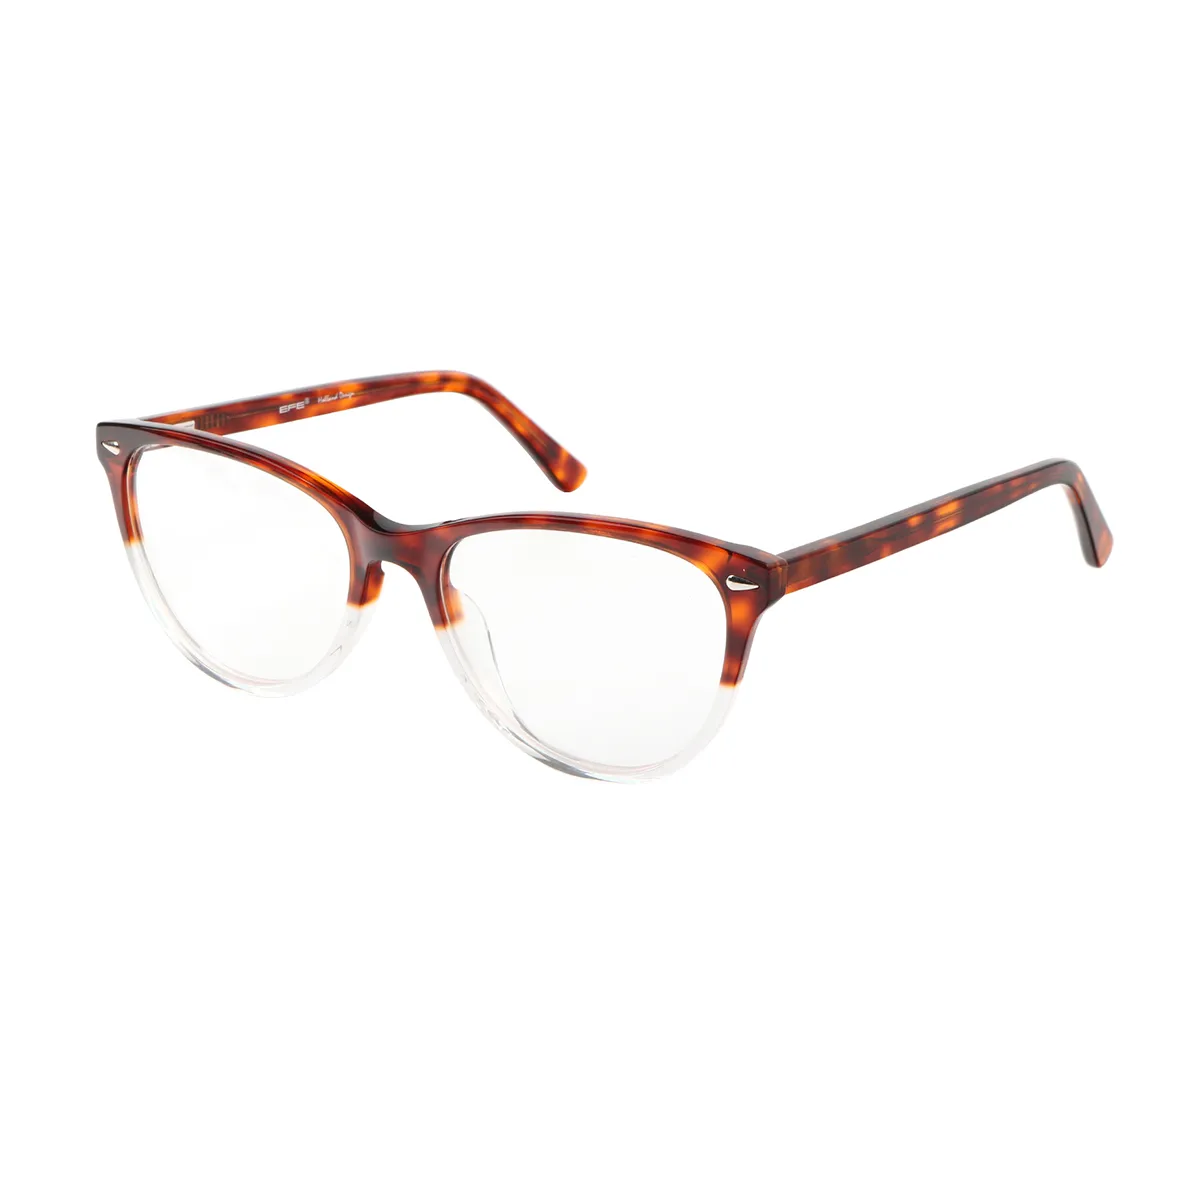 Jone - Oval Brown-Tortoiseshell Glasses for Women